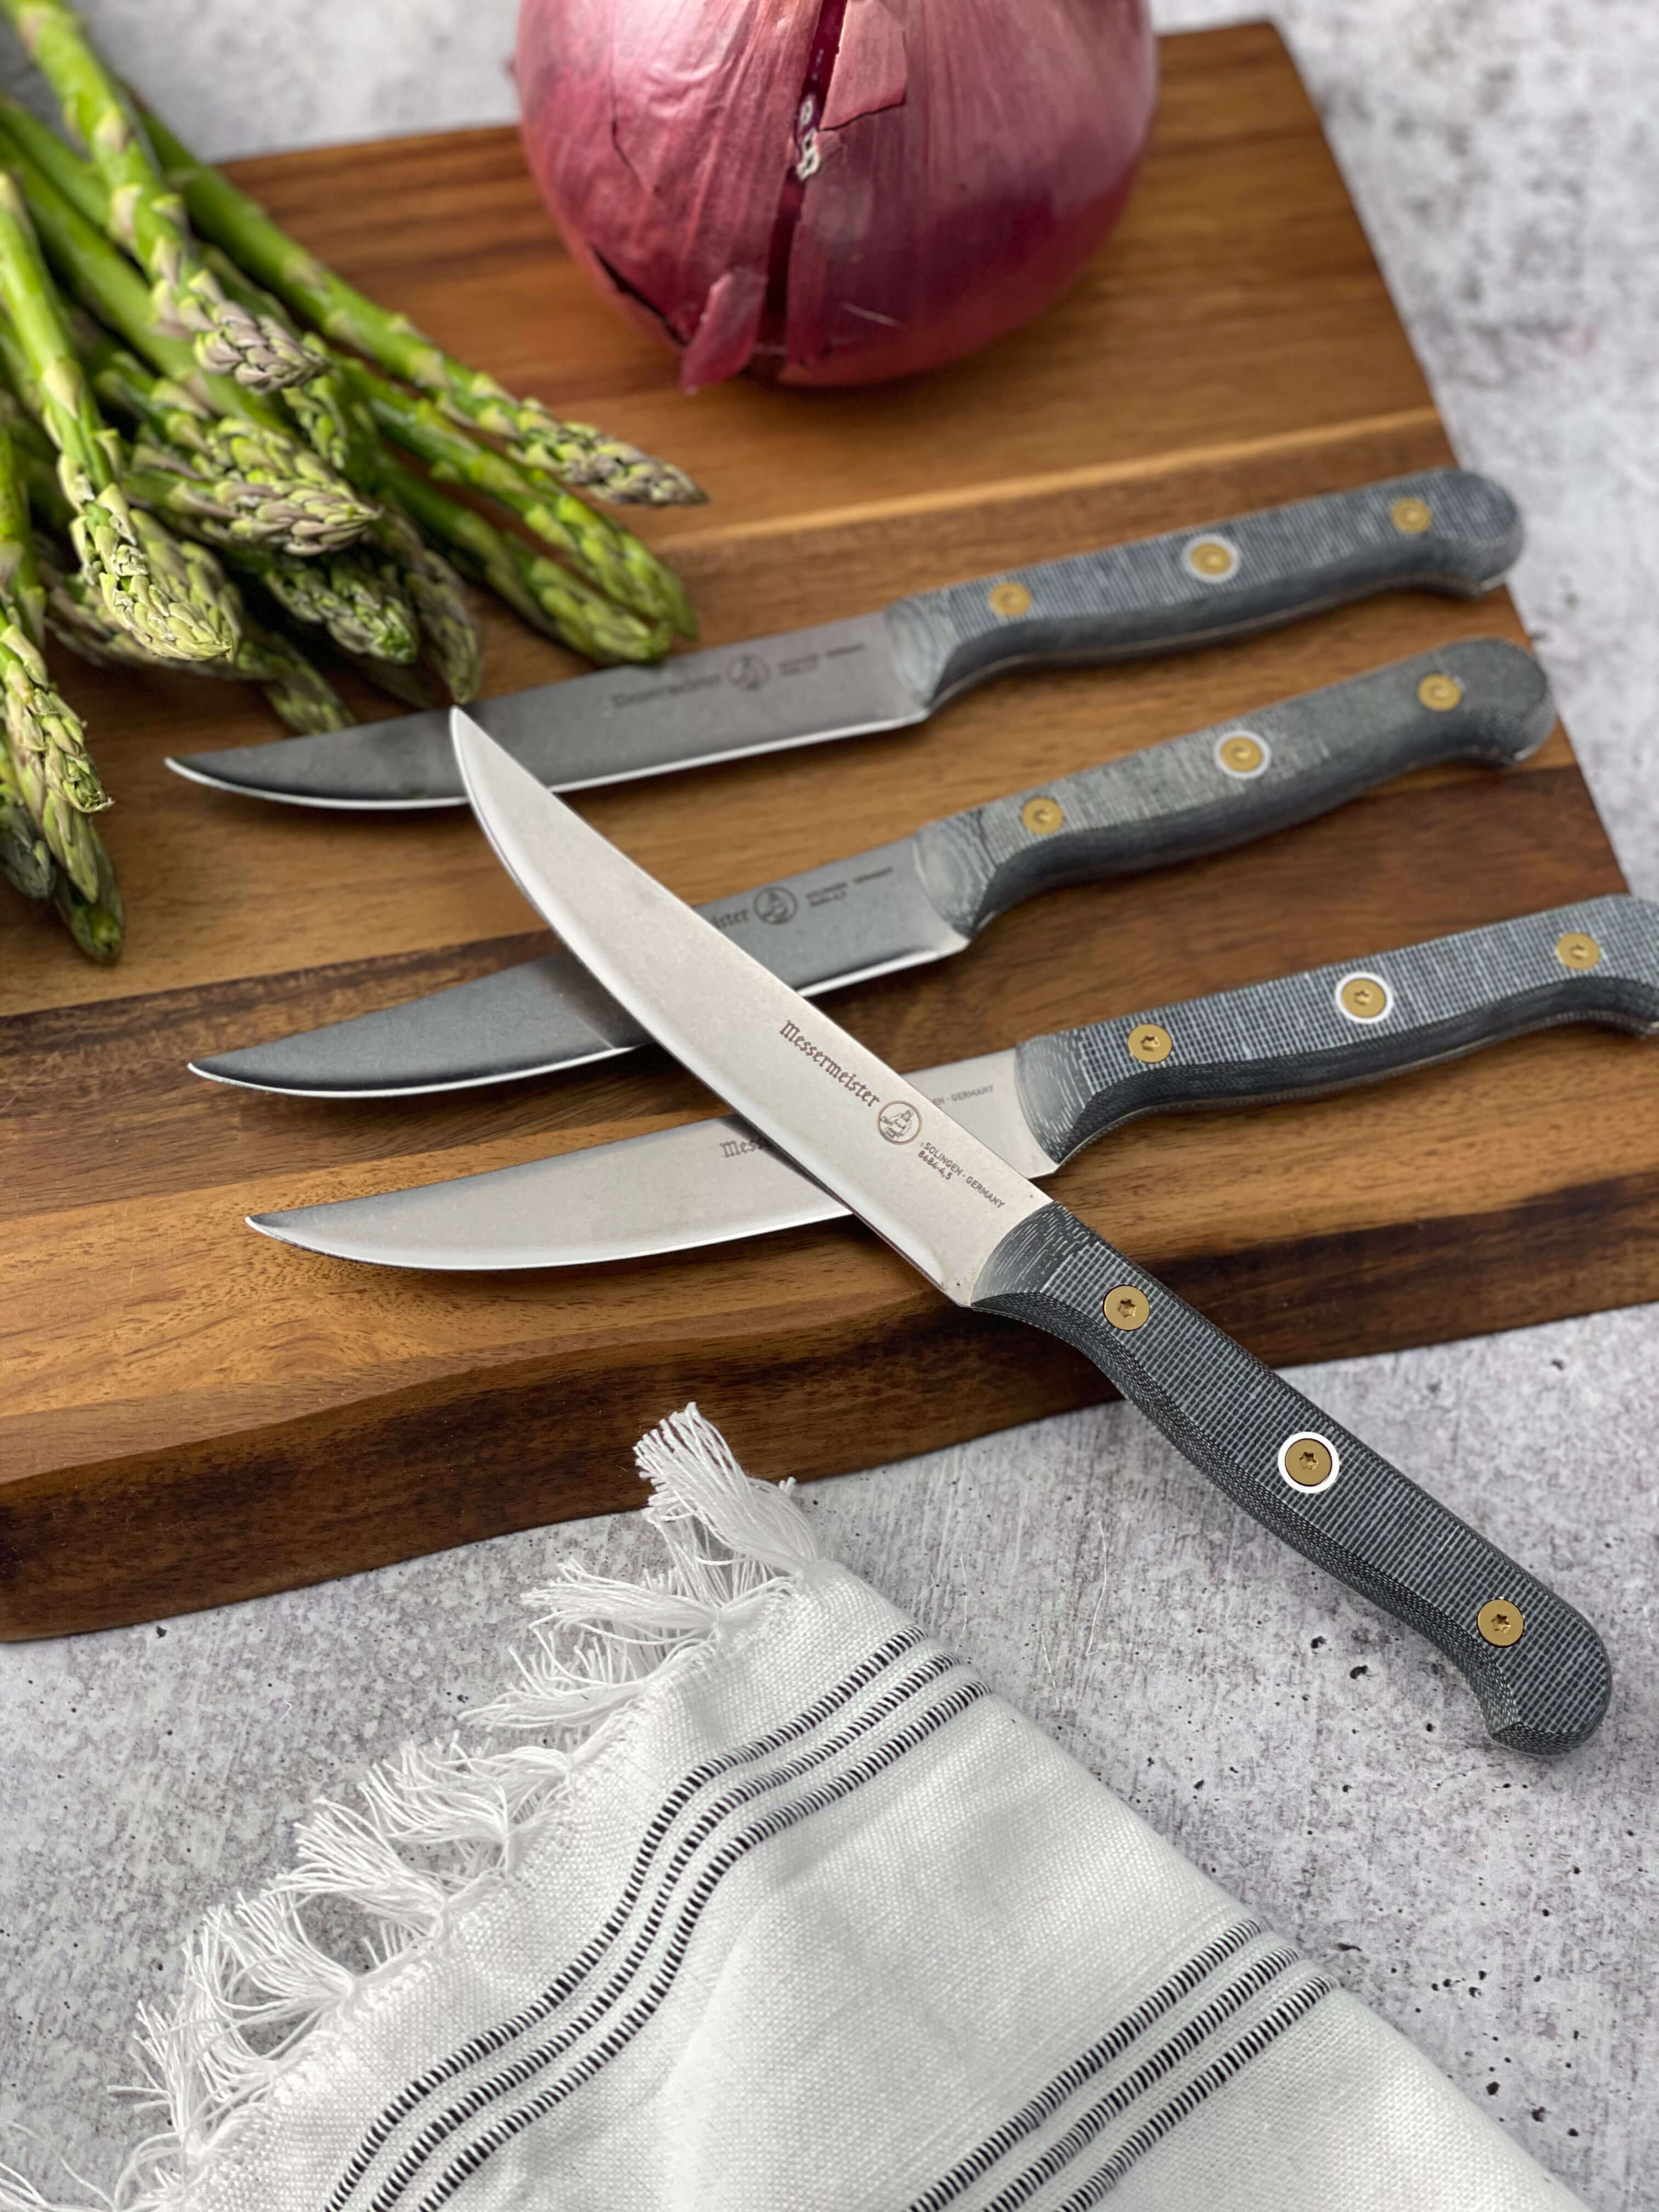 Top Chef Steak Knives (4-Pack) Steel 80-TC10 - Best Buy